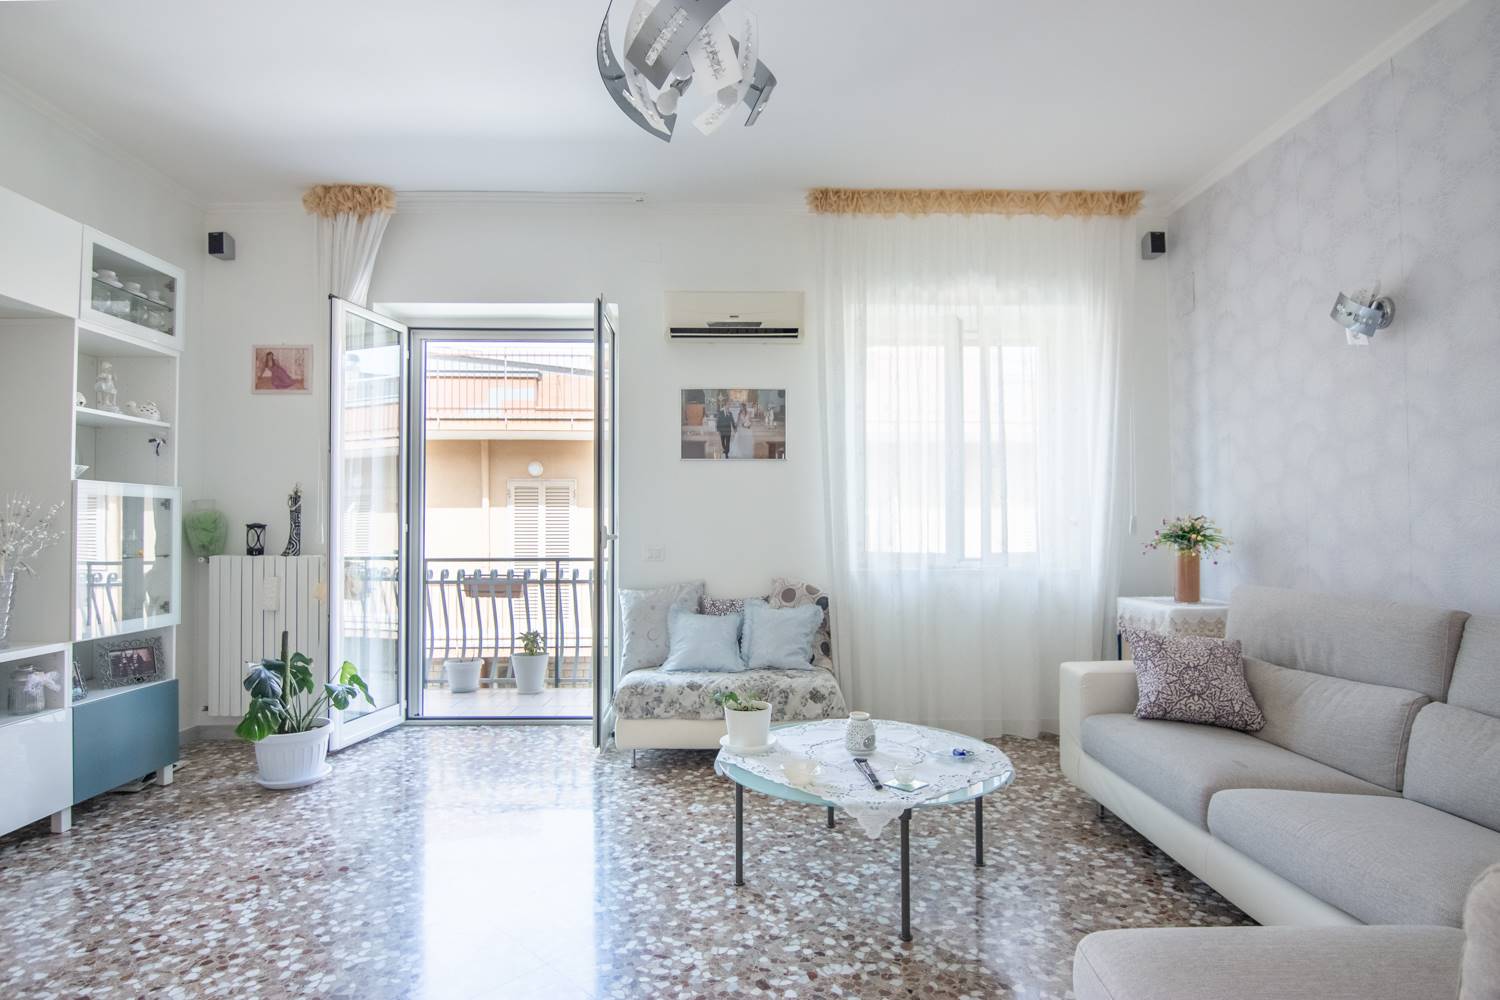 Appartamento in vendita a Bitonto, 3 locali, prezzo € 125.000 | CambioCasa.it